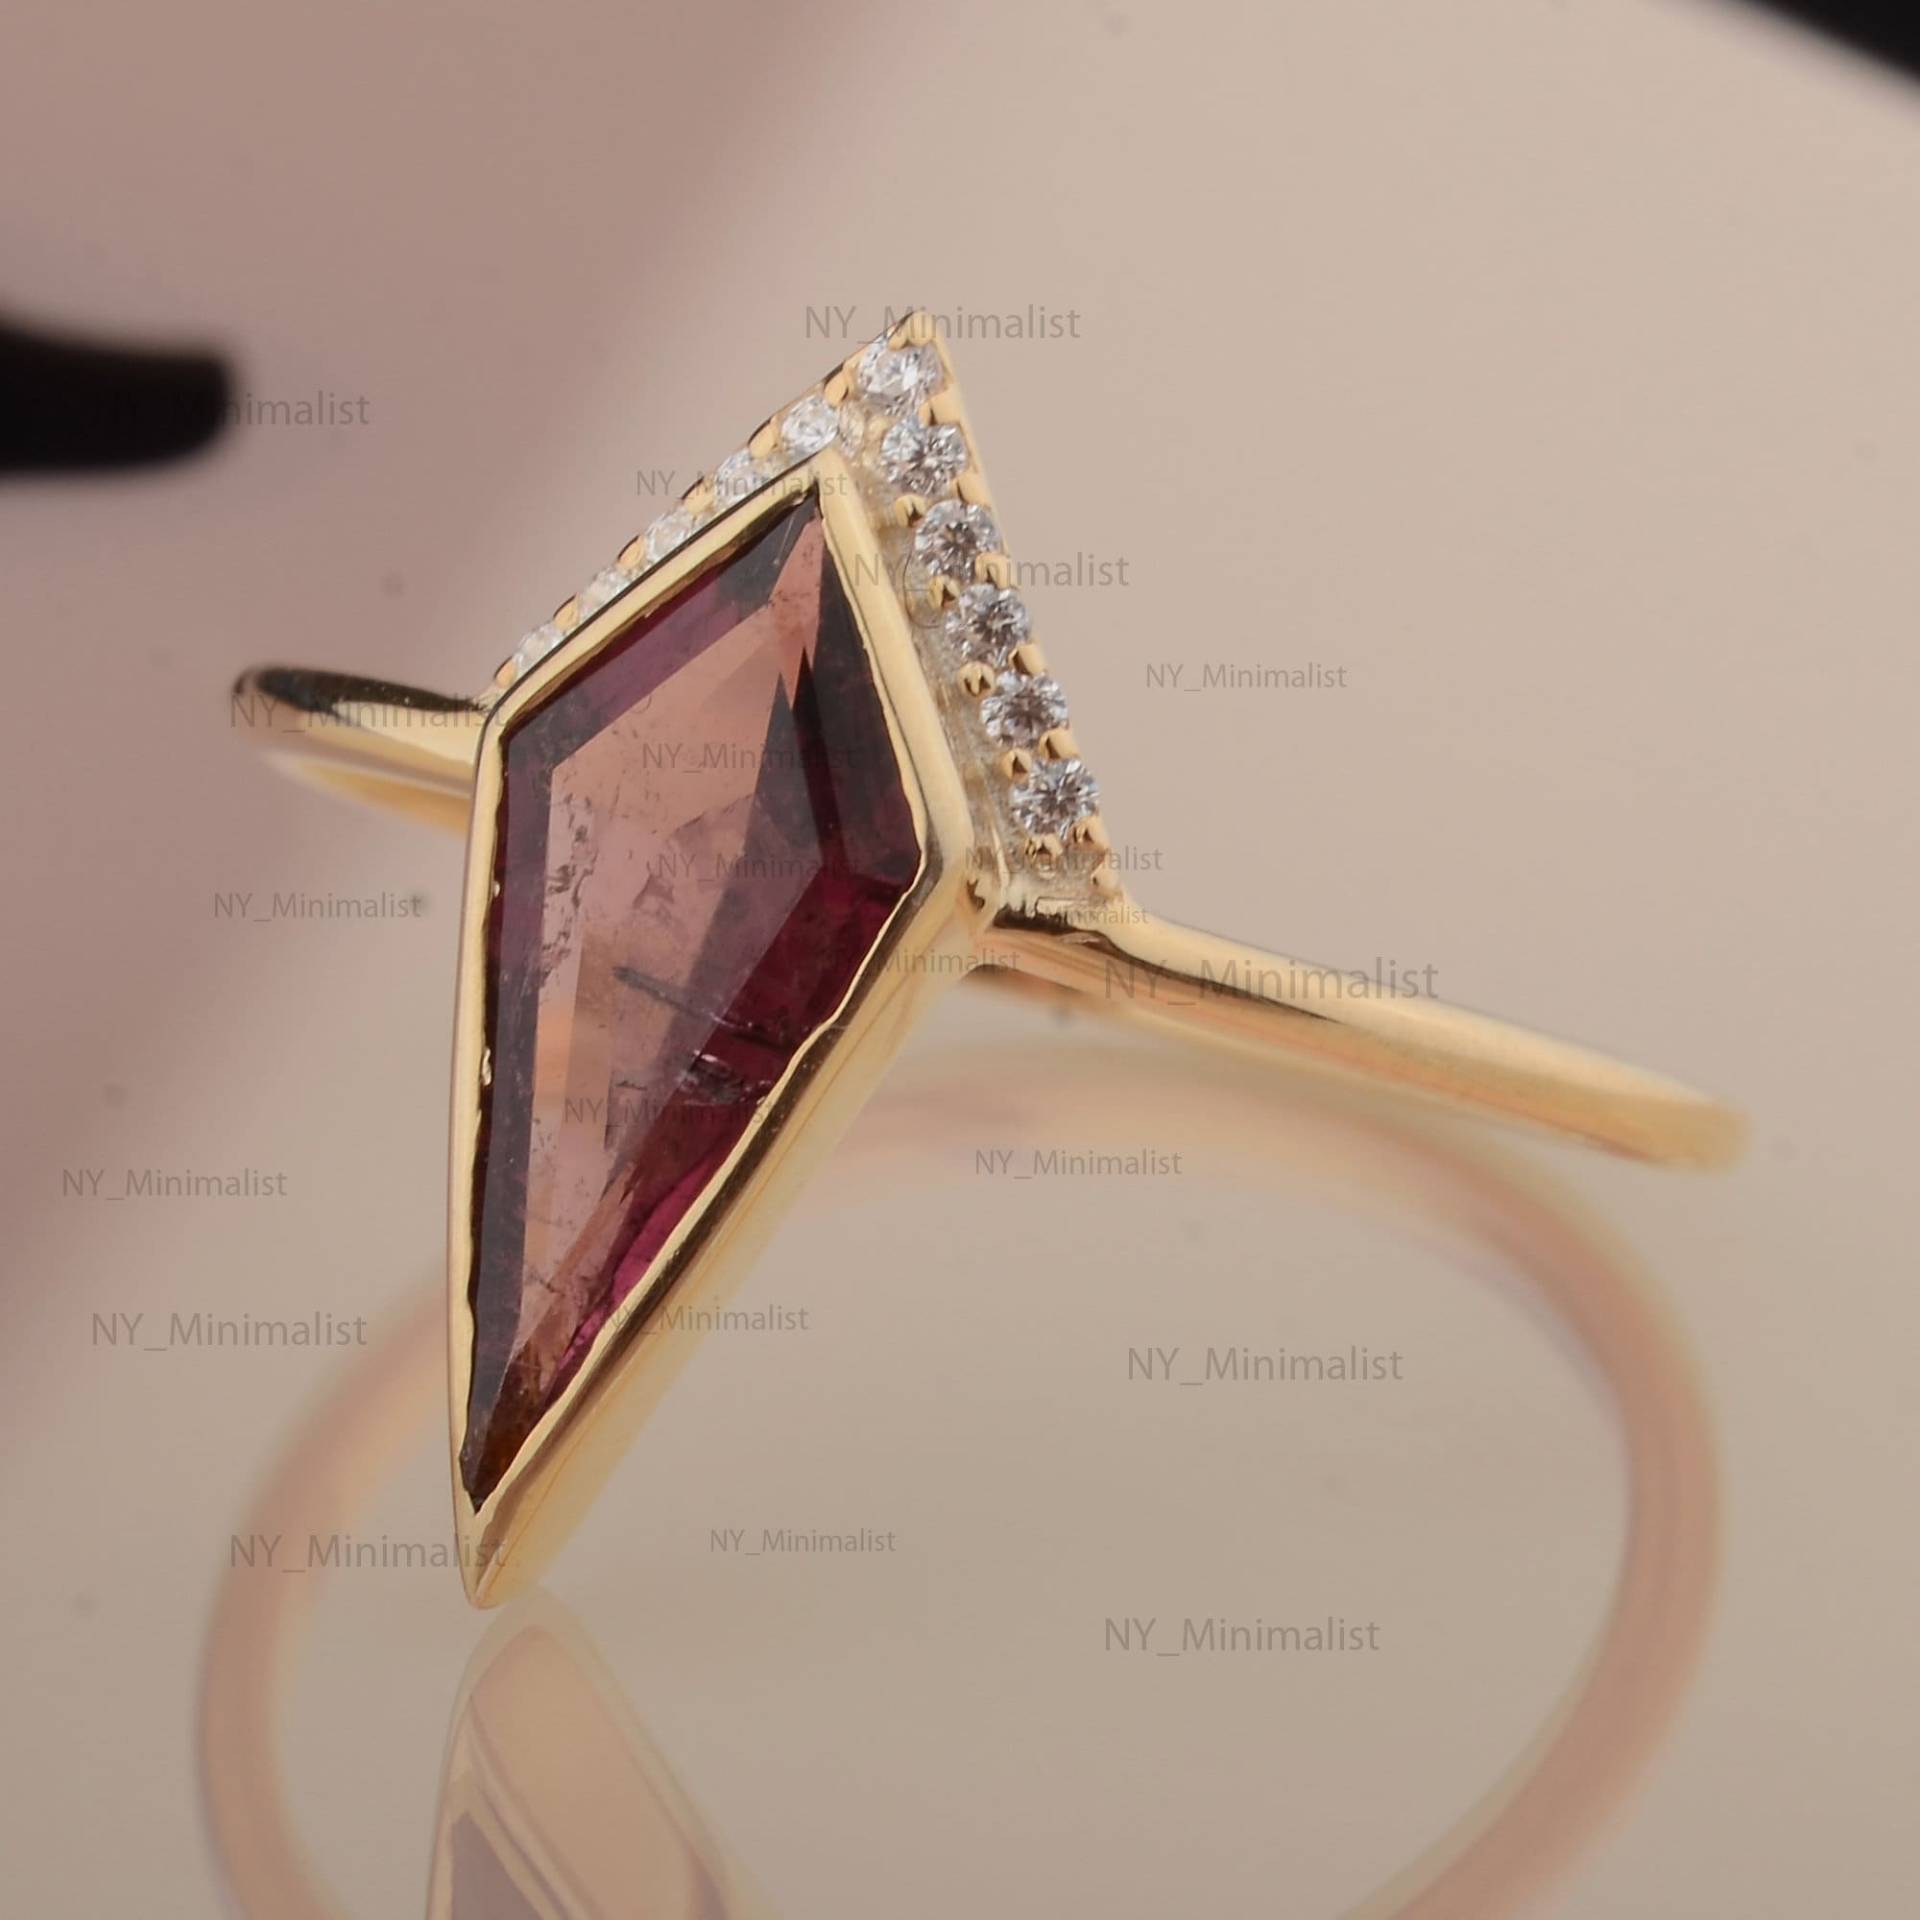 Echte 1.81 Ct. Drachen Form Rosa Turmalin Edelstein Diamant Statement Ring in Massivem 14K Gelbgold Hochzeit Verlobung Schmuck von nyminimalist